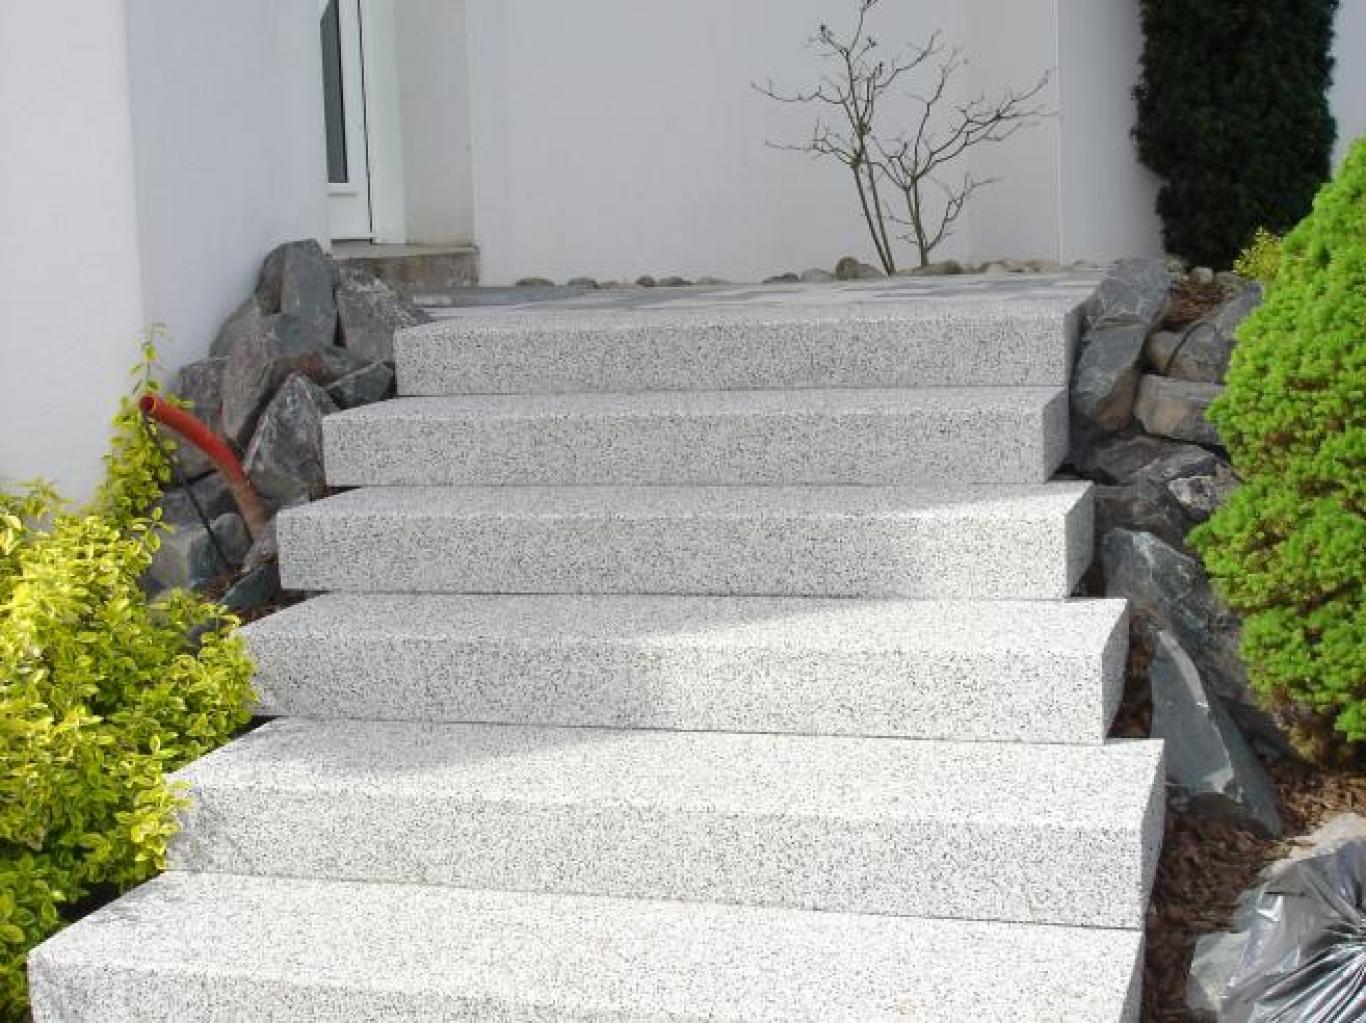 Escaliers d'accès de la cours à l'habitation et plantations à Épinal